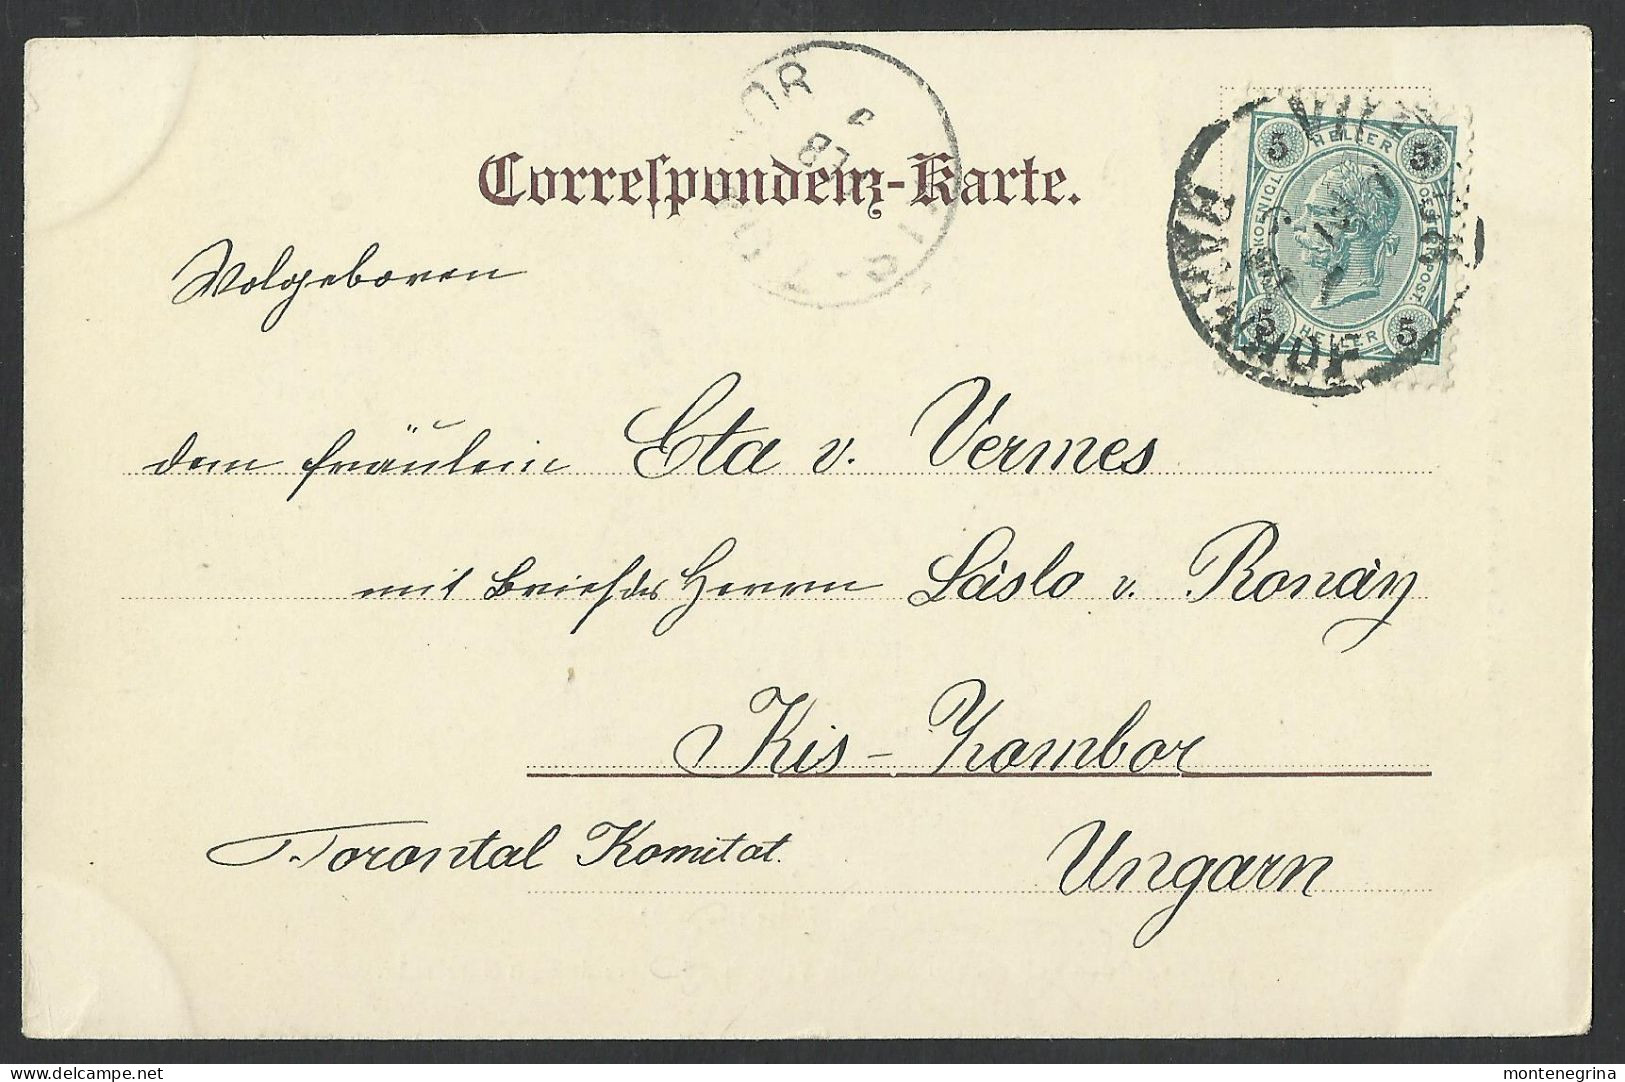 VILLACH - Kärntner Volksschauspiele "Der Wilde" Ed.Caspar & Poltnig - C-1900 - Old Postcard(see Sales Conditions) 08728 - Villach